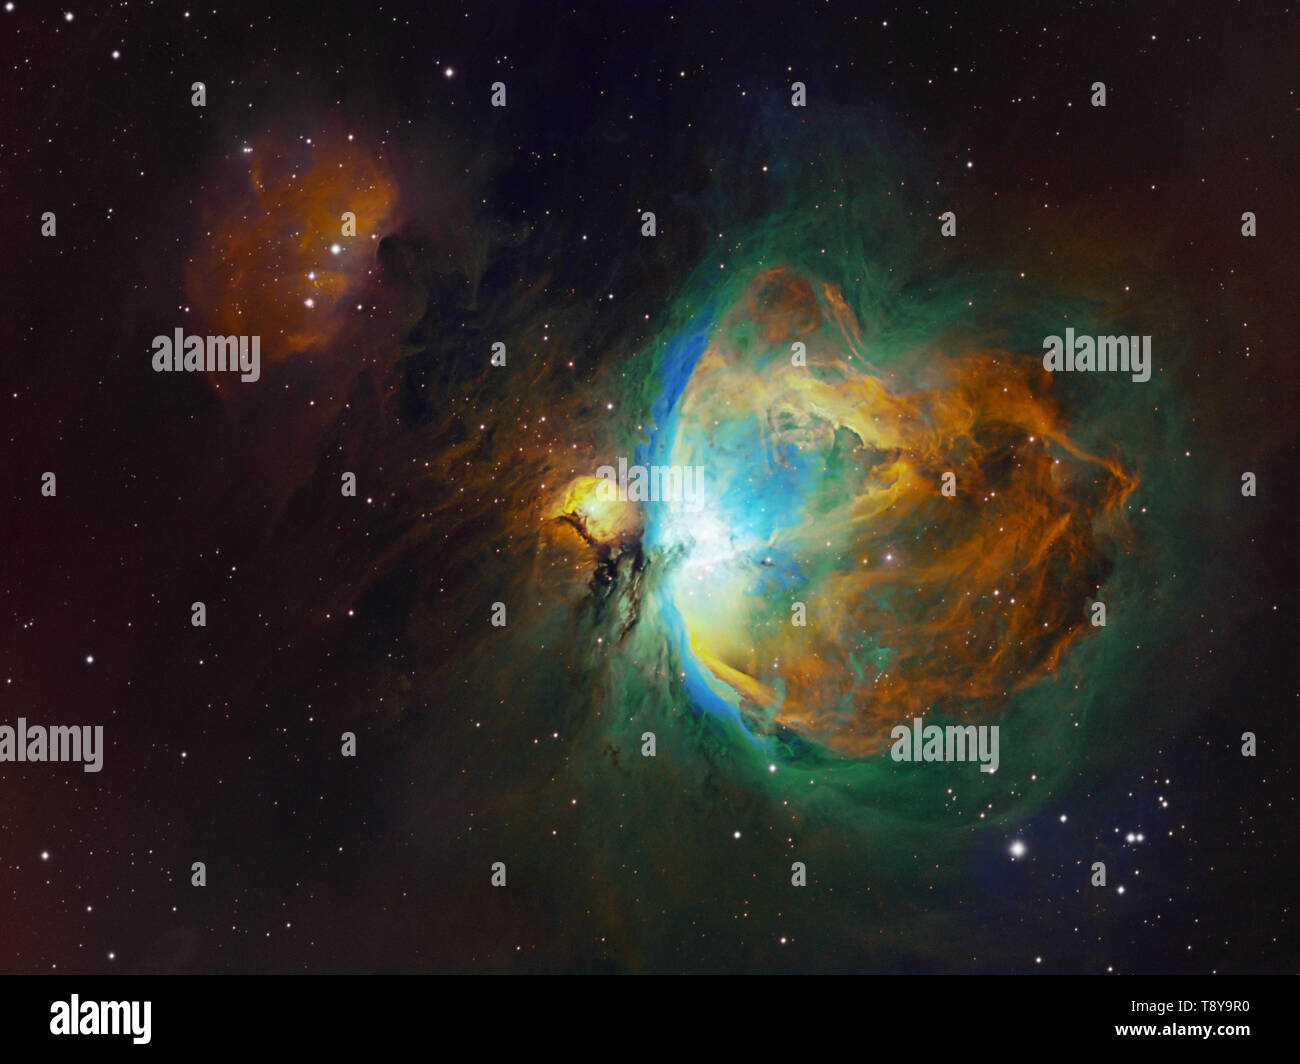 Les objets de l'espace lointain et Orion Nebula Homme courant dans la constellation d'Orion, photo dans la palette de couleurs de Hubble. Cette photo est étroite Banque D'Images